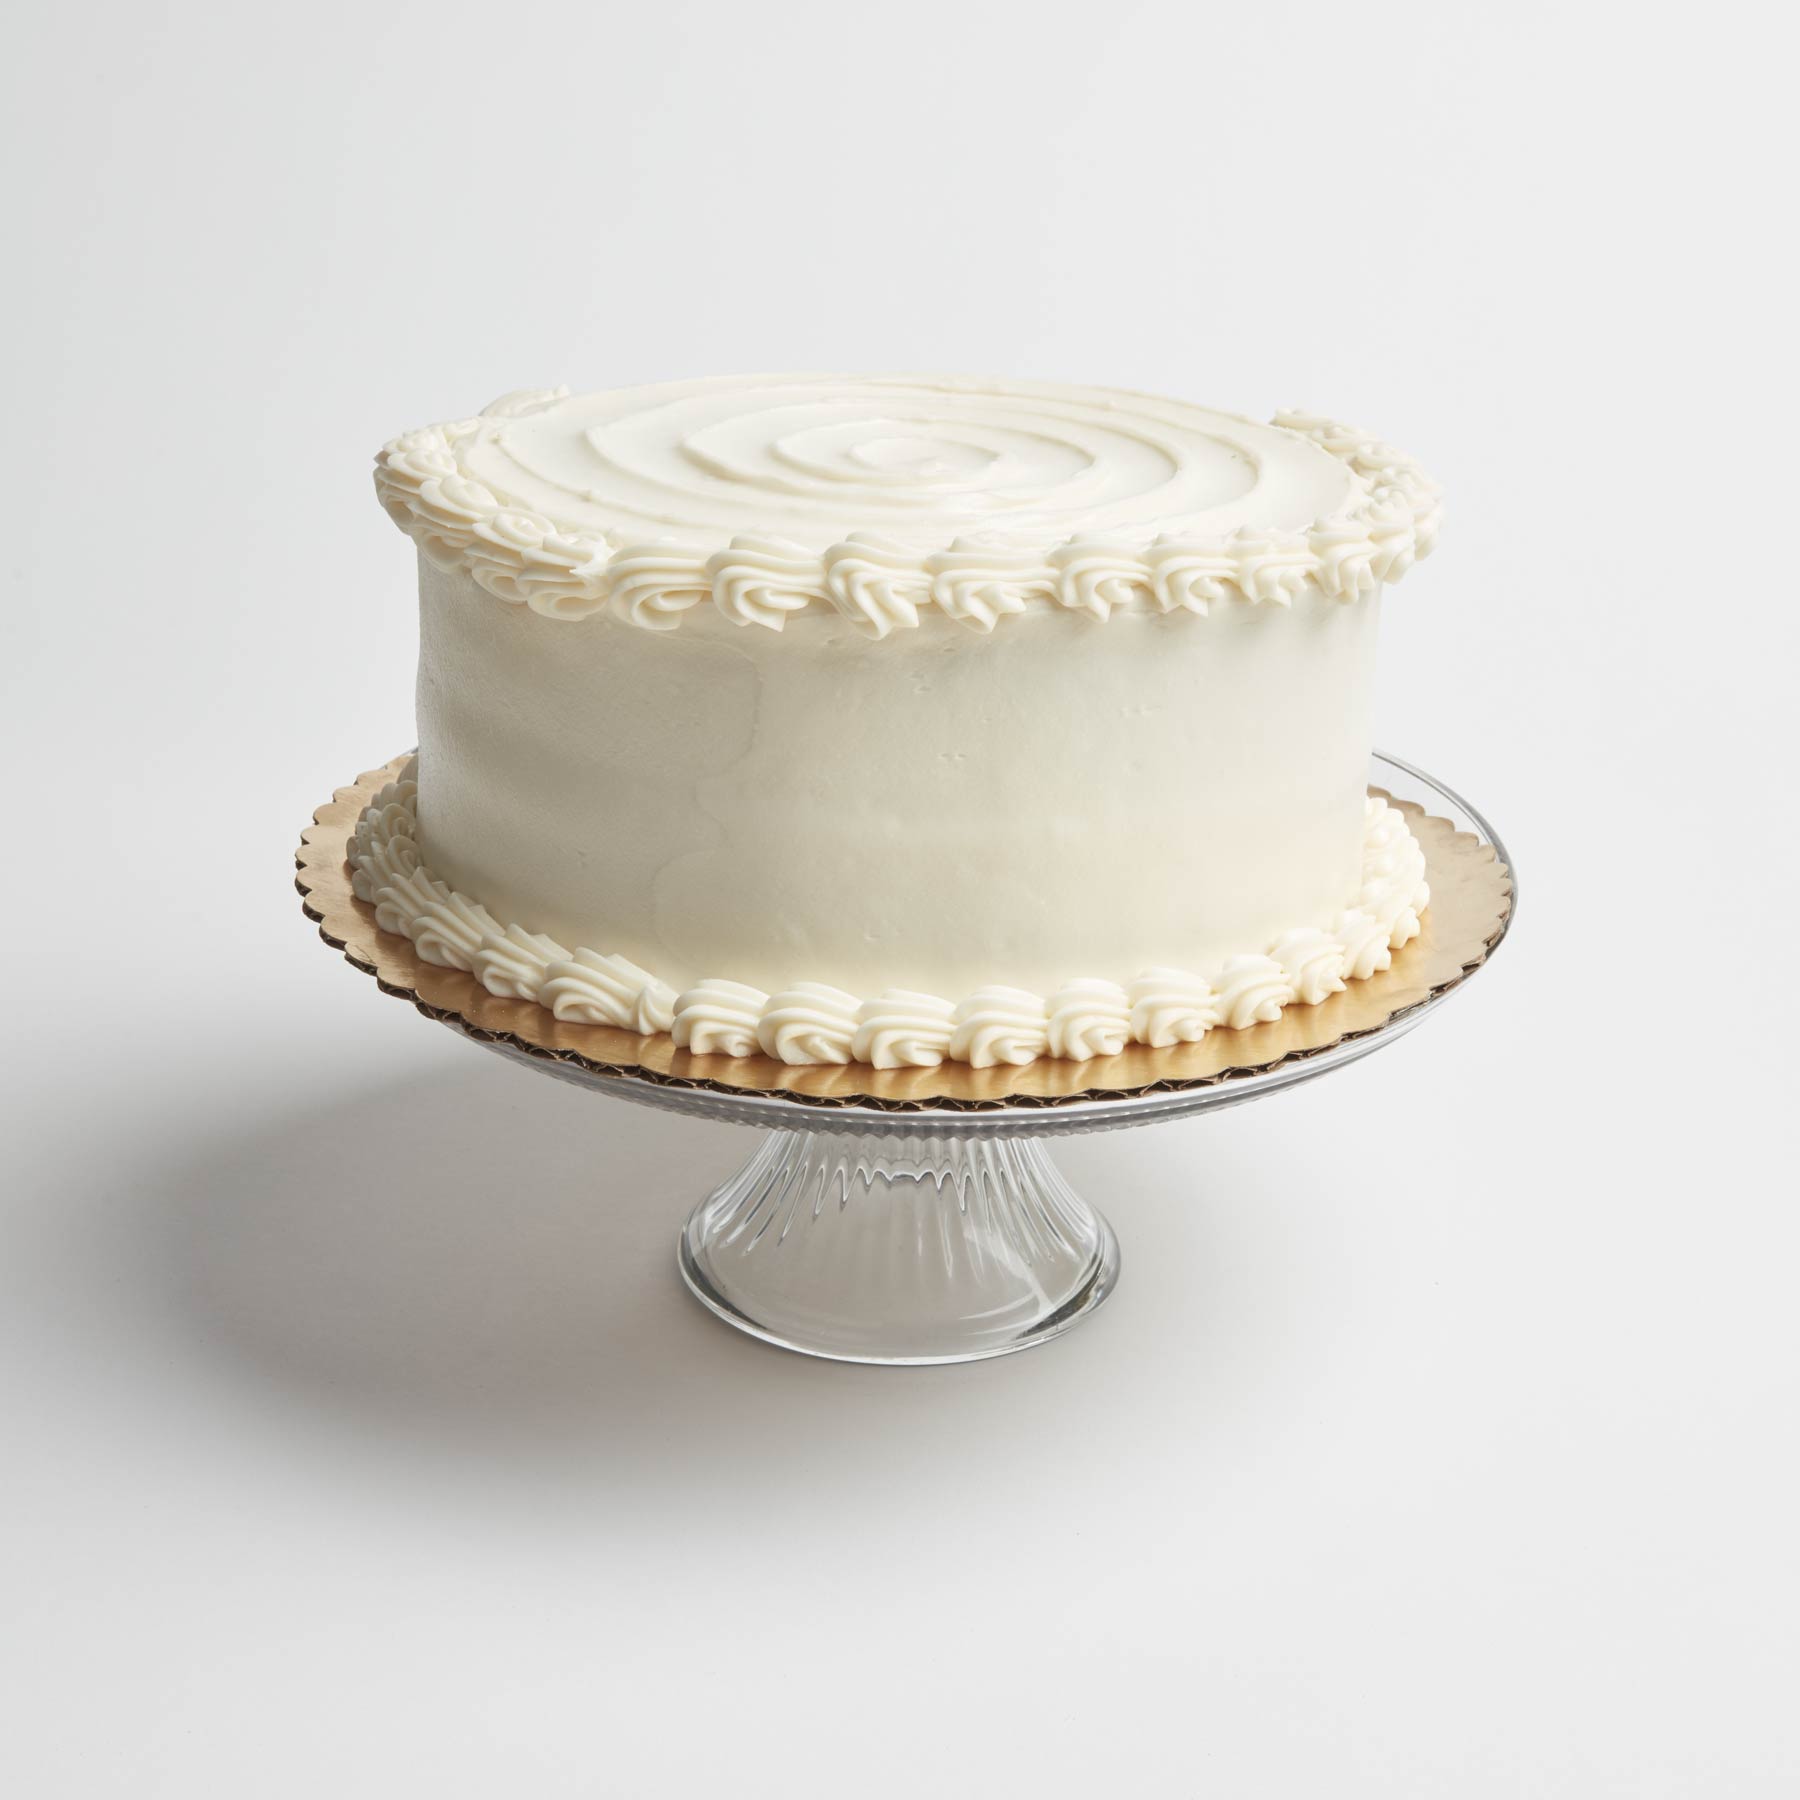 40+ Elegant and Simple White Wedding Cakes Ideas | WeddingInclude | Wedding  Ideas Inspiration Blog